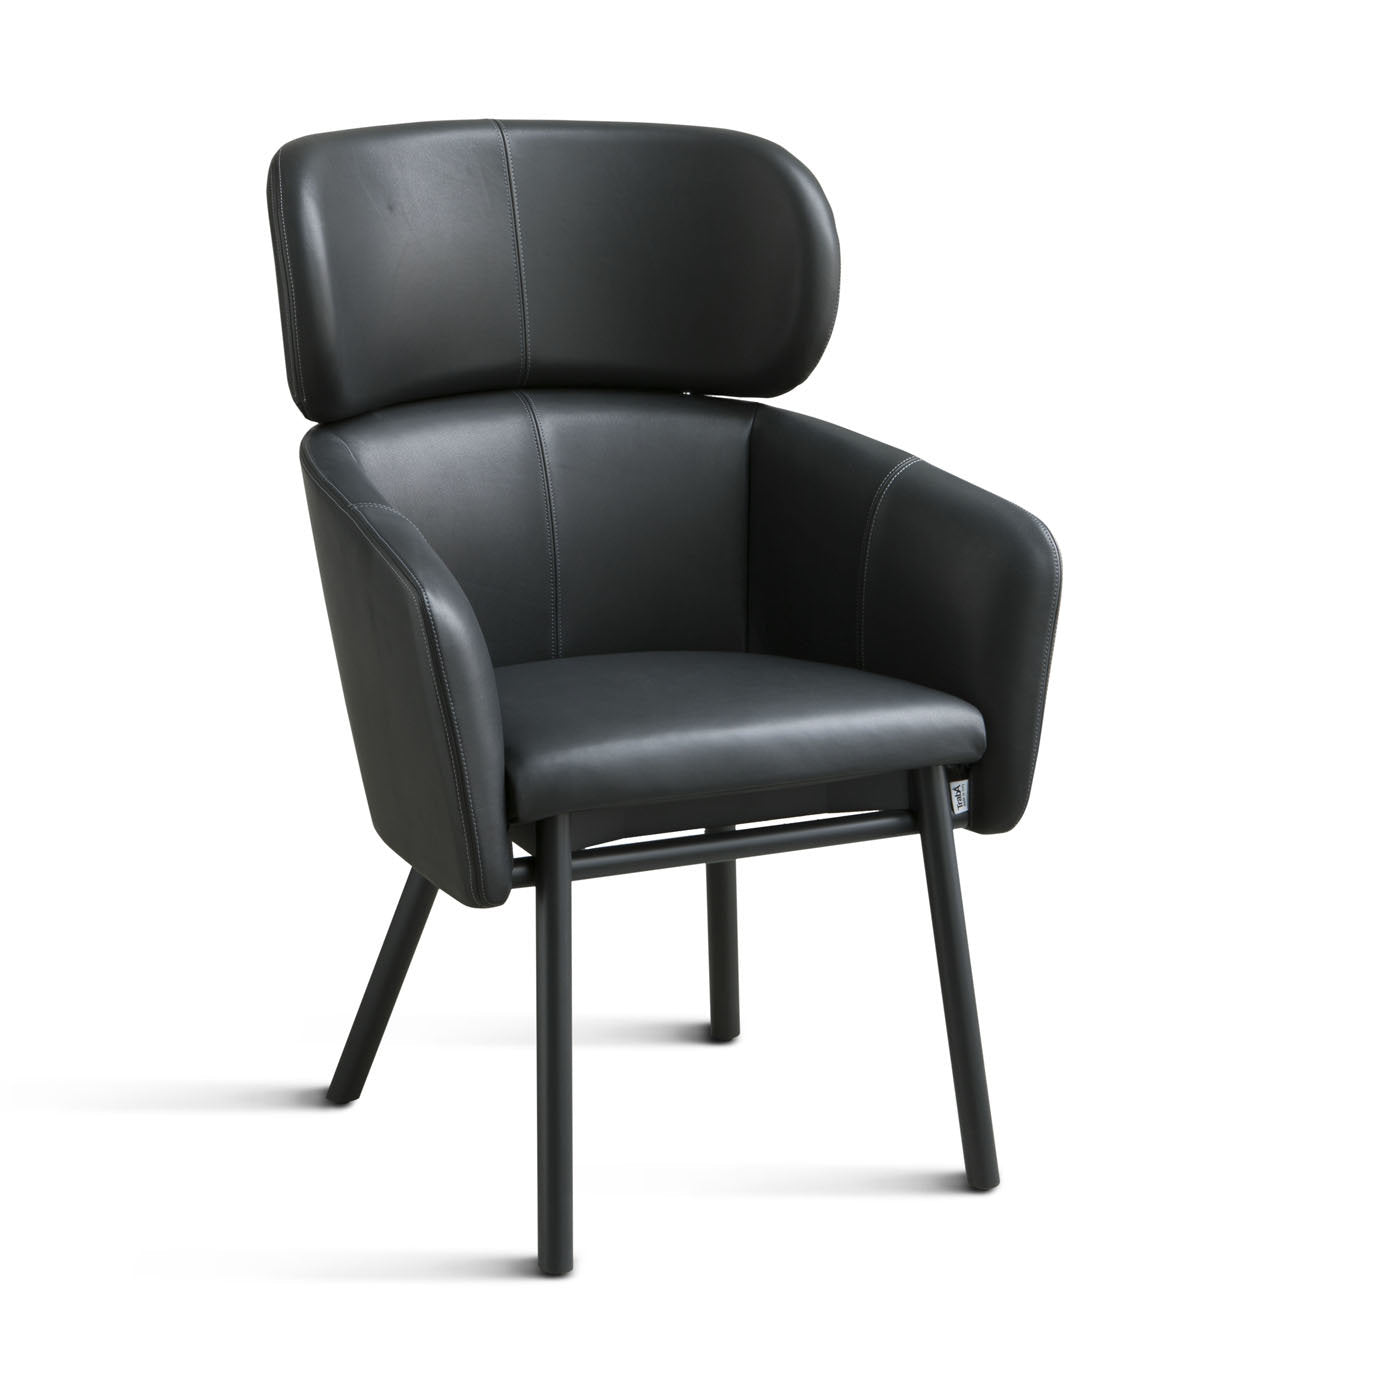 Balù XL Black Tall Chair By Emilio Nanni - Alternative view 1